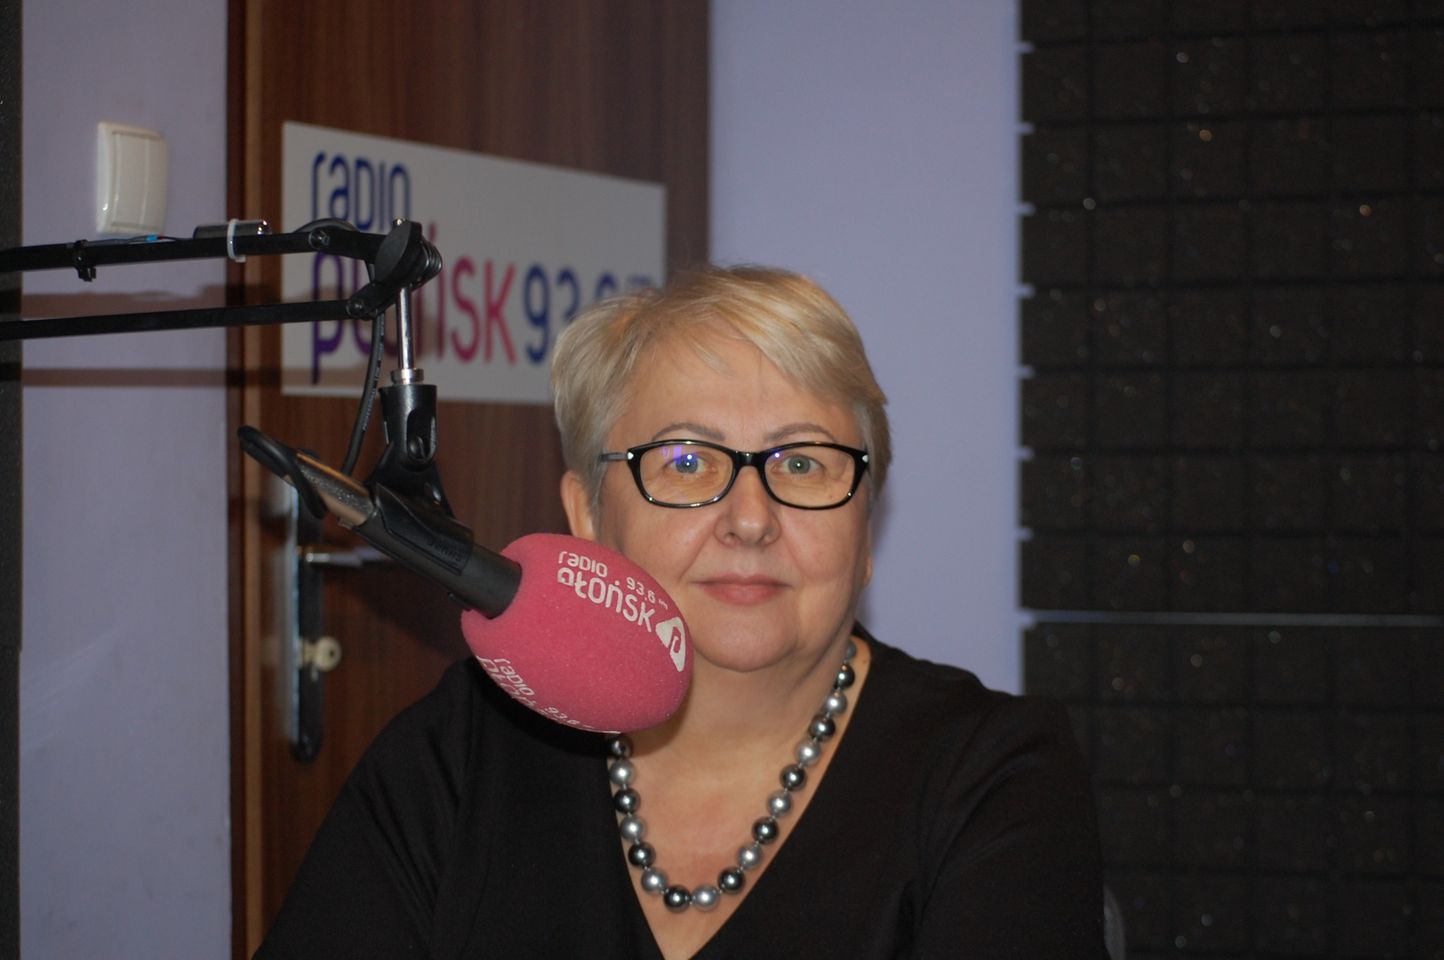 na zdjęciu widać Panią Elżbietę Szymanik zastępcę dyrektora w Mazowieckiej Jednostce Wdrażania Programów Unijnych podczas wywiadu w studiu Radia Płońsk.